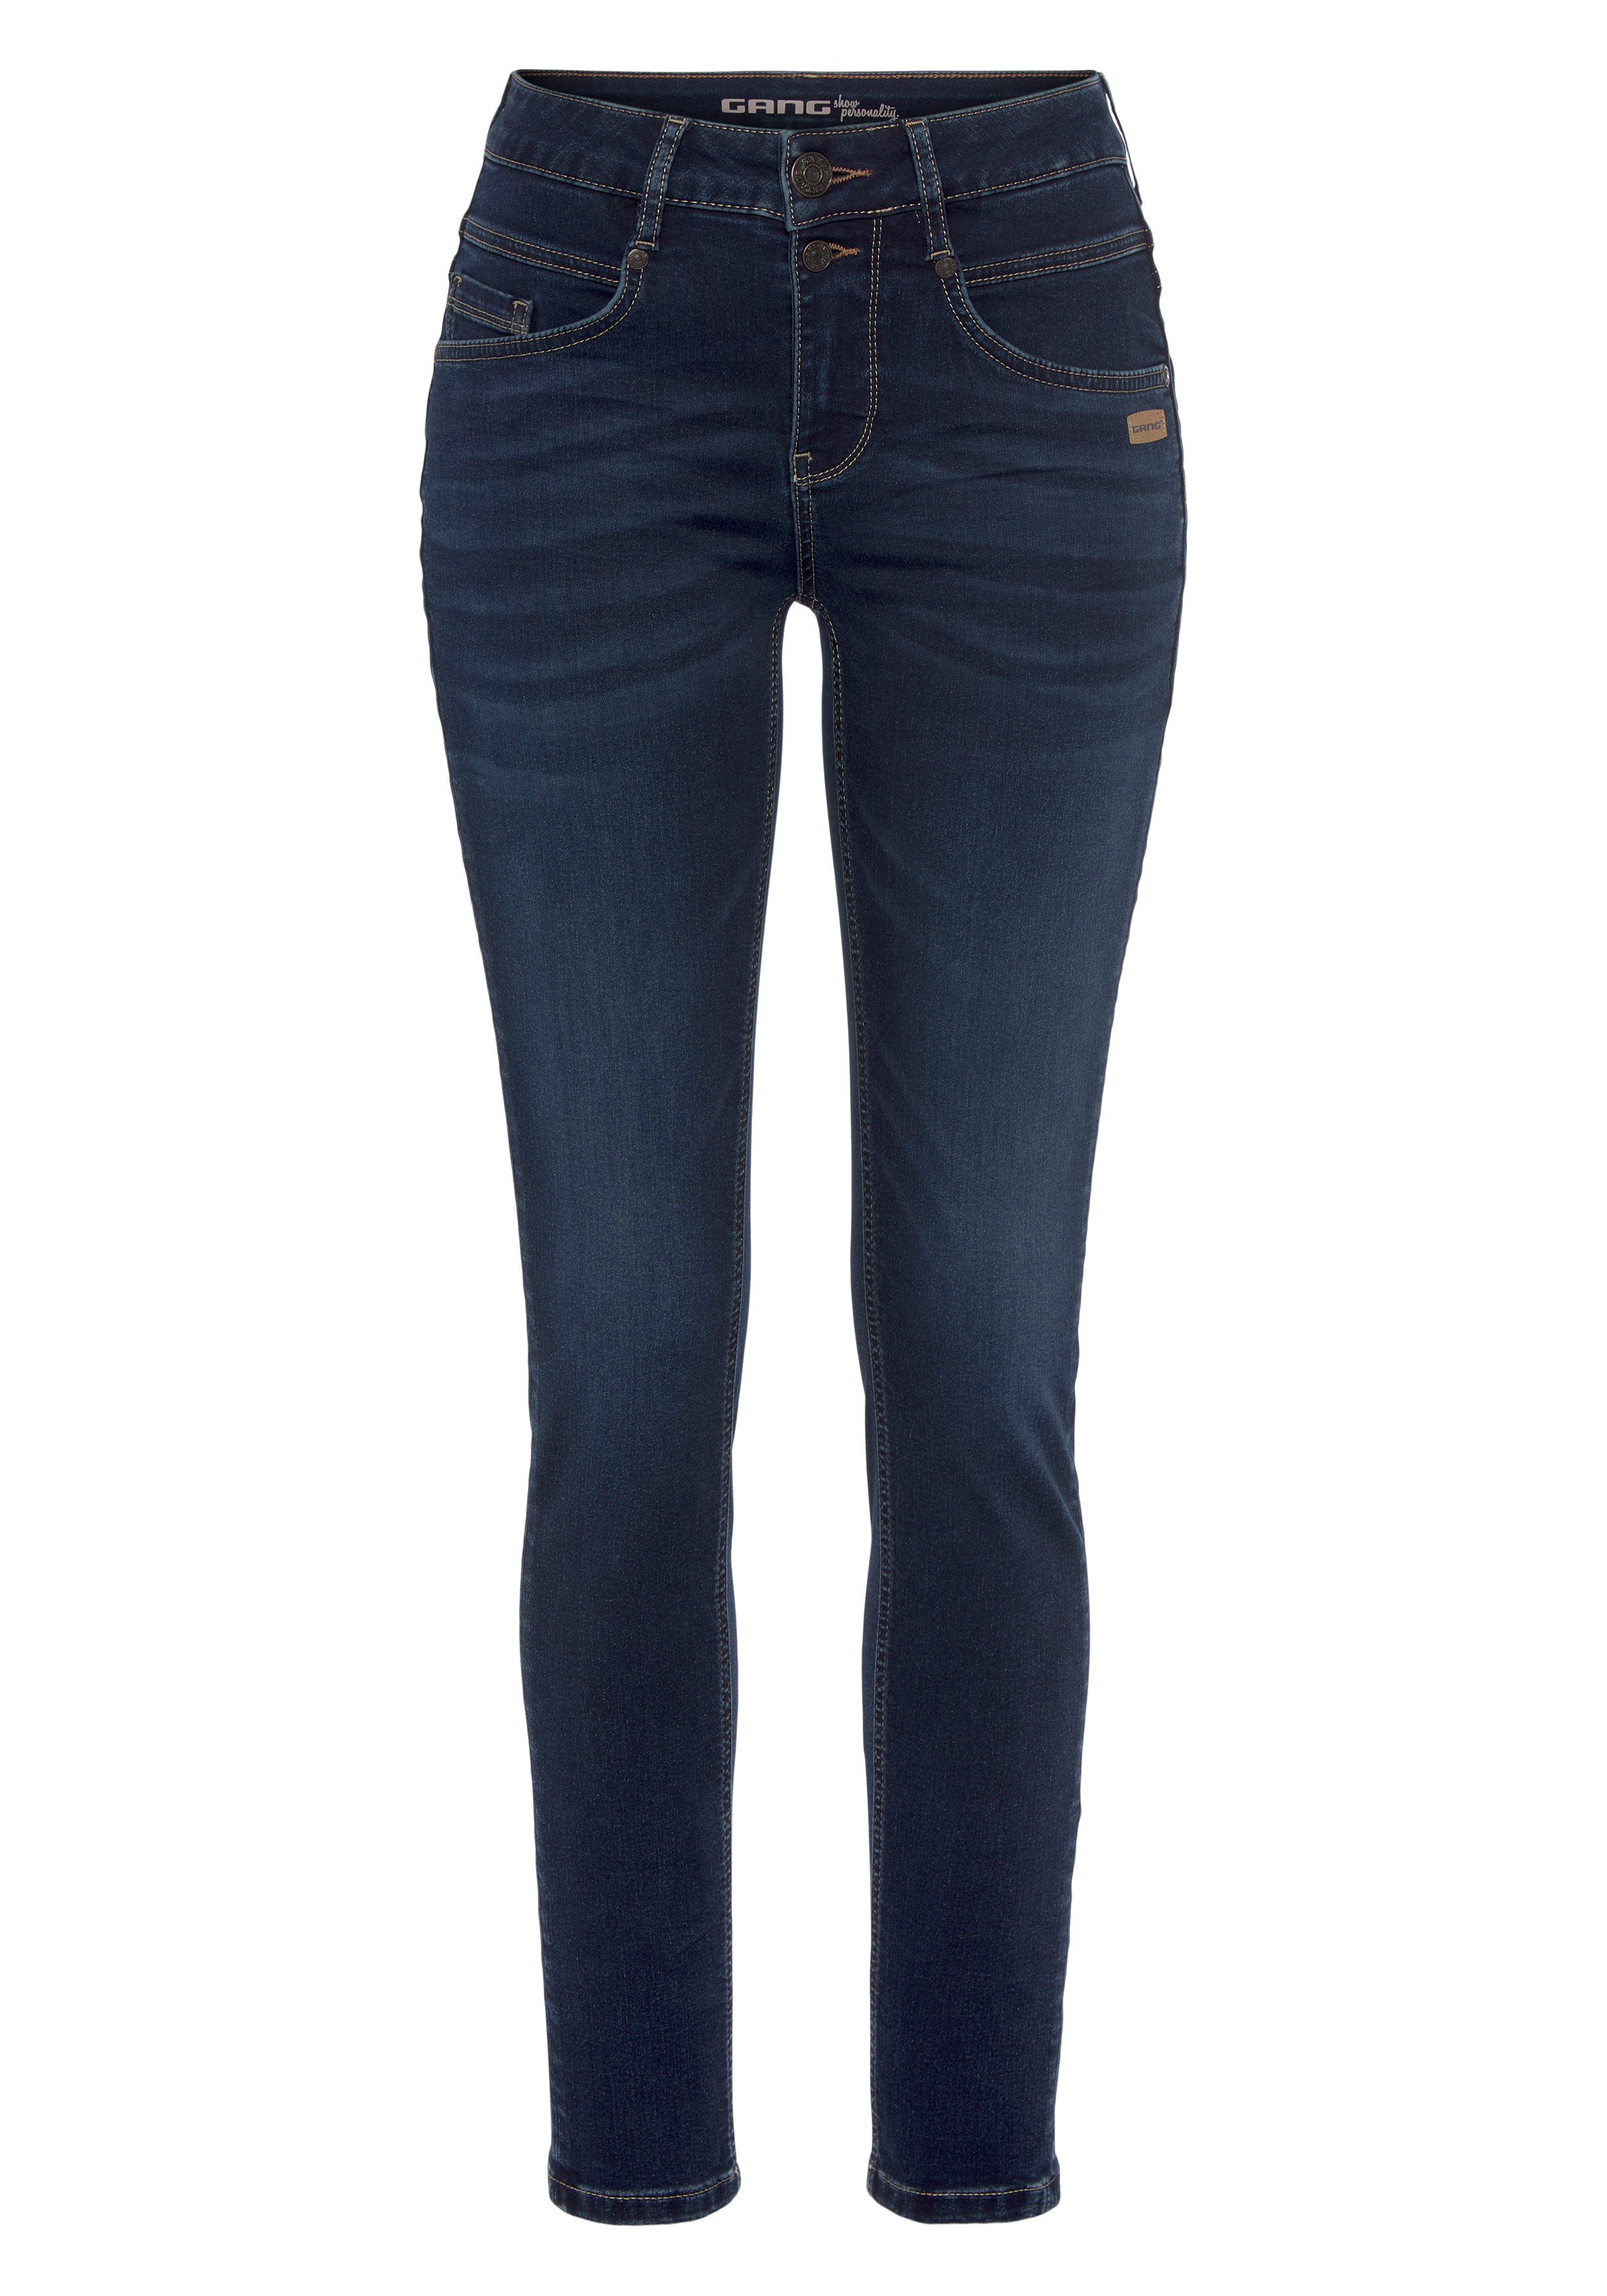 GANG Skinny-fit-Jeans 94MORA mit Passe blue 3-Knopf-Verschluss und deep vorne dark